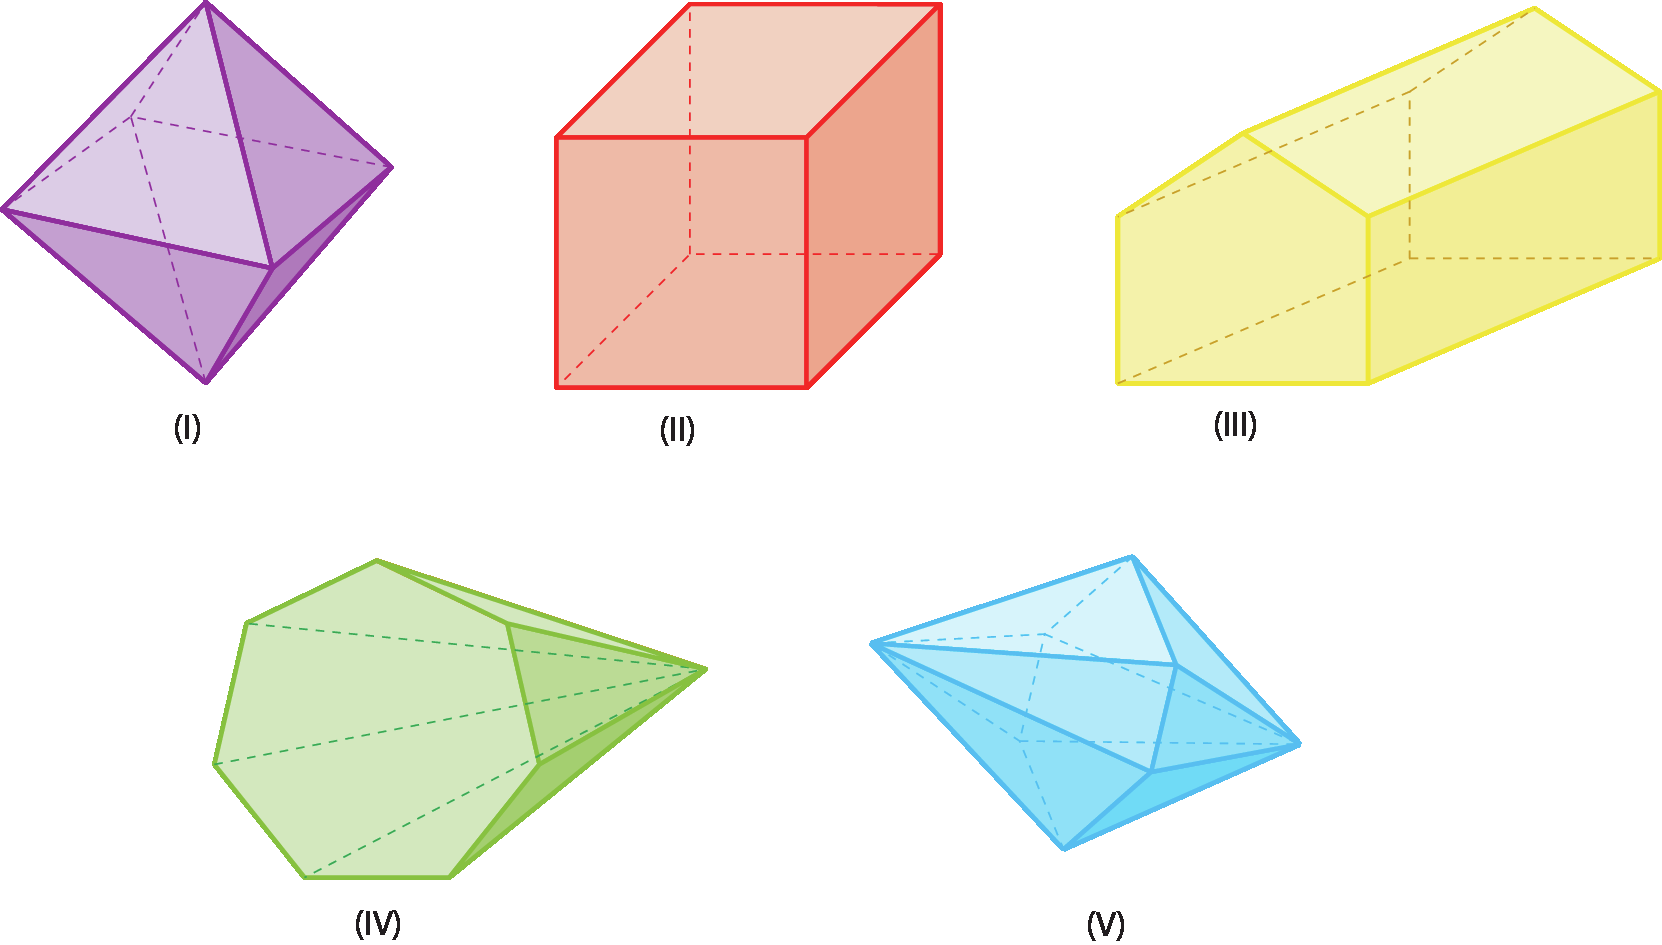 Ilustração um. Octaedro.

Ilustração dois. Cubo. 

Ilustração três. Prisma amarelo de base pentagonal.

Ilustração quatro. Pirâmide de base heptagonal. 

Ilustração cinco. Figura geométrica não plana composta por duas pirâmides de base hexagonal, unidas por suas bases.